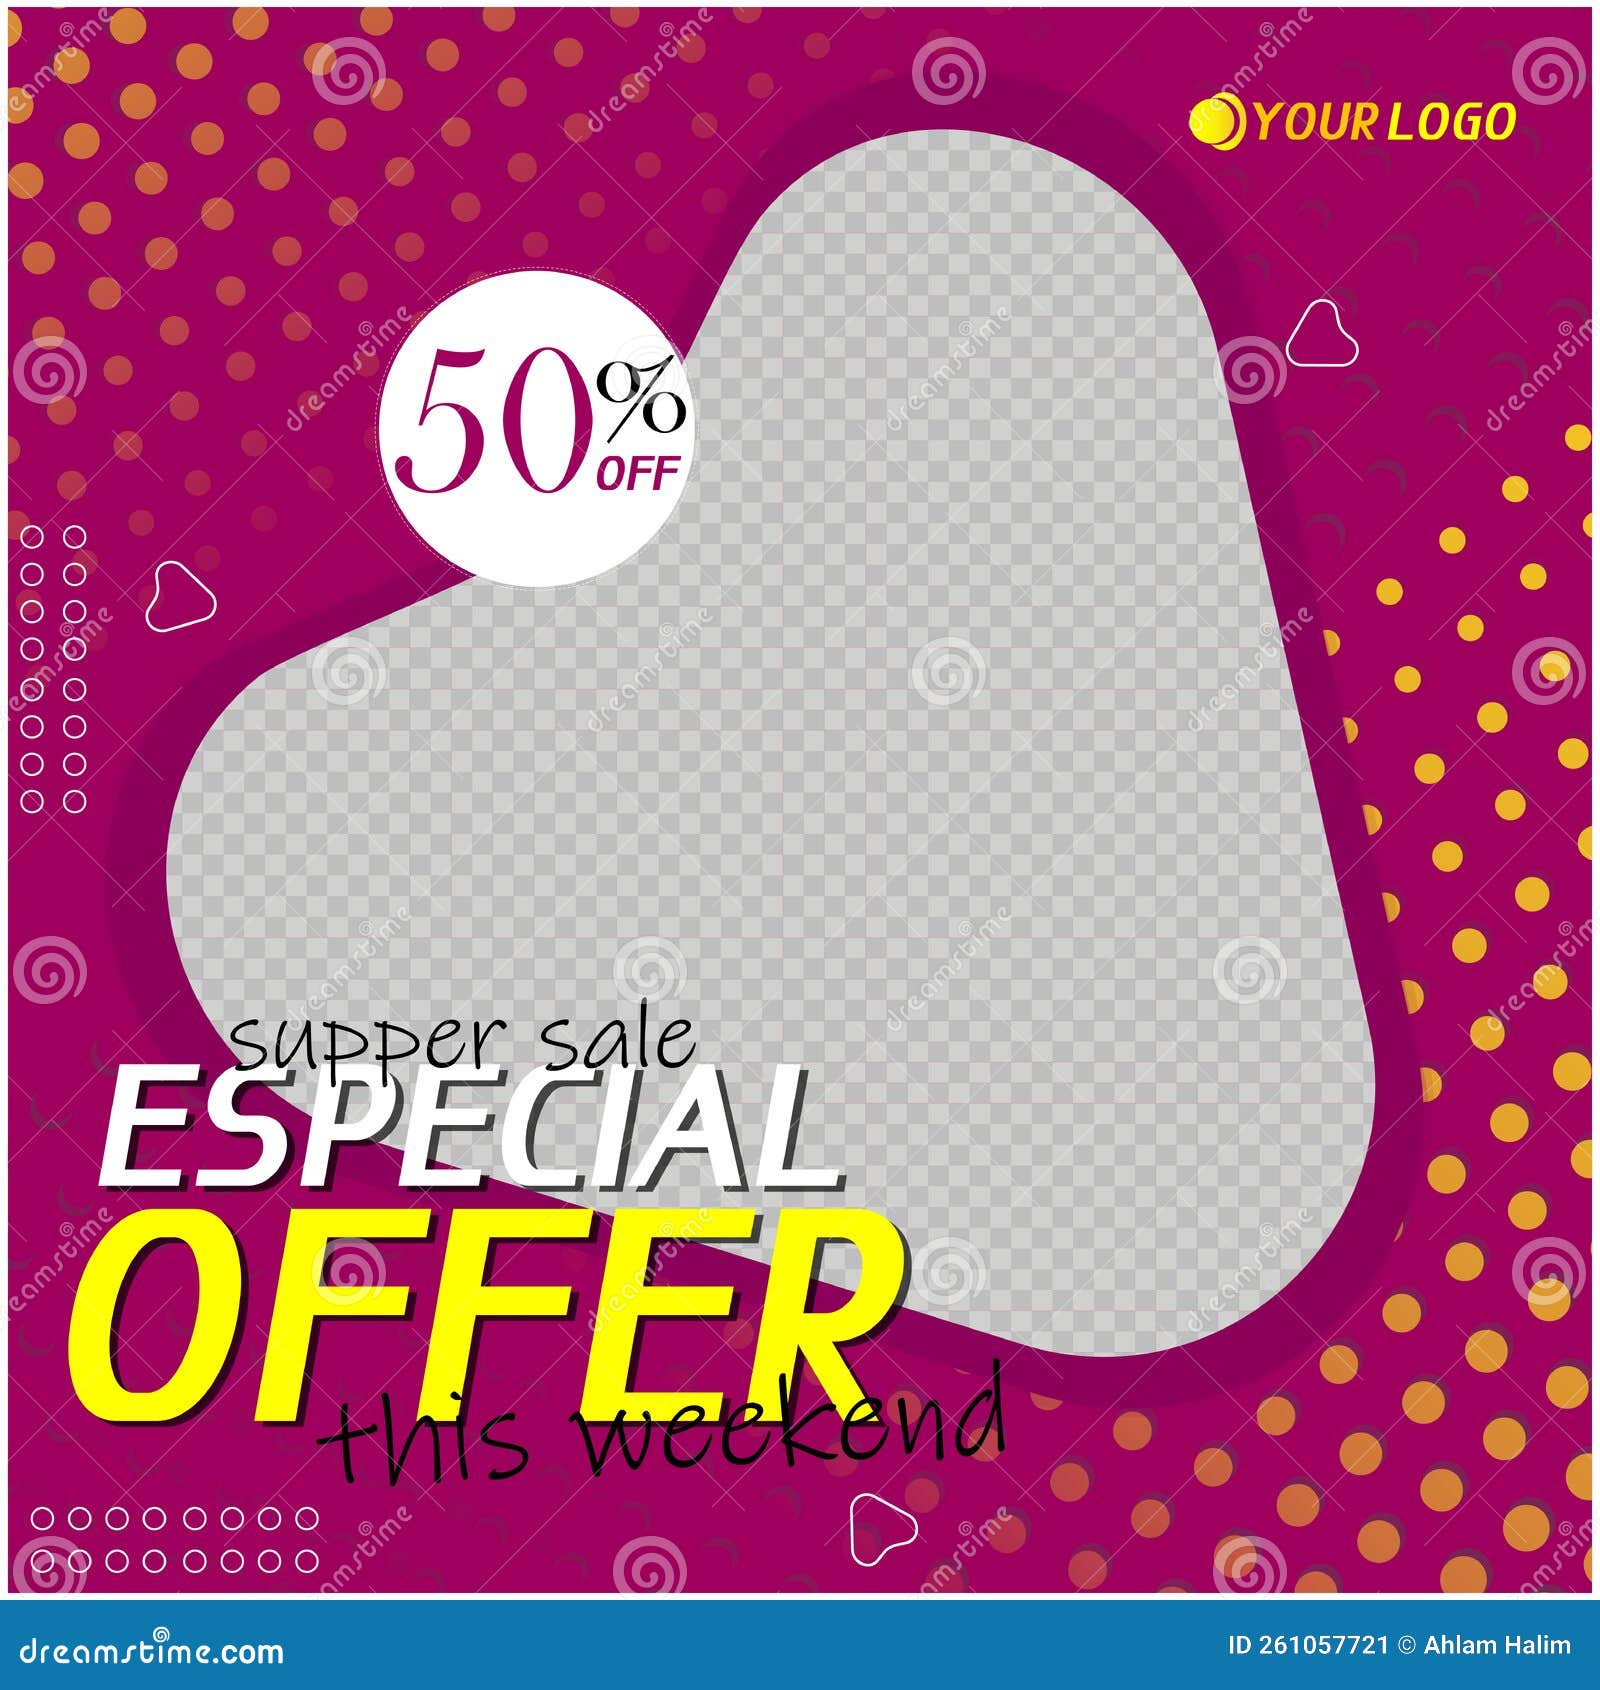 super sale - especial offer - social media post